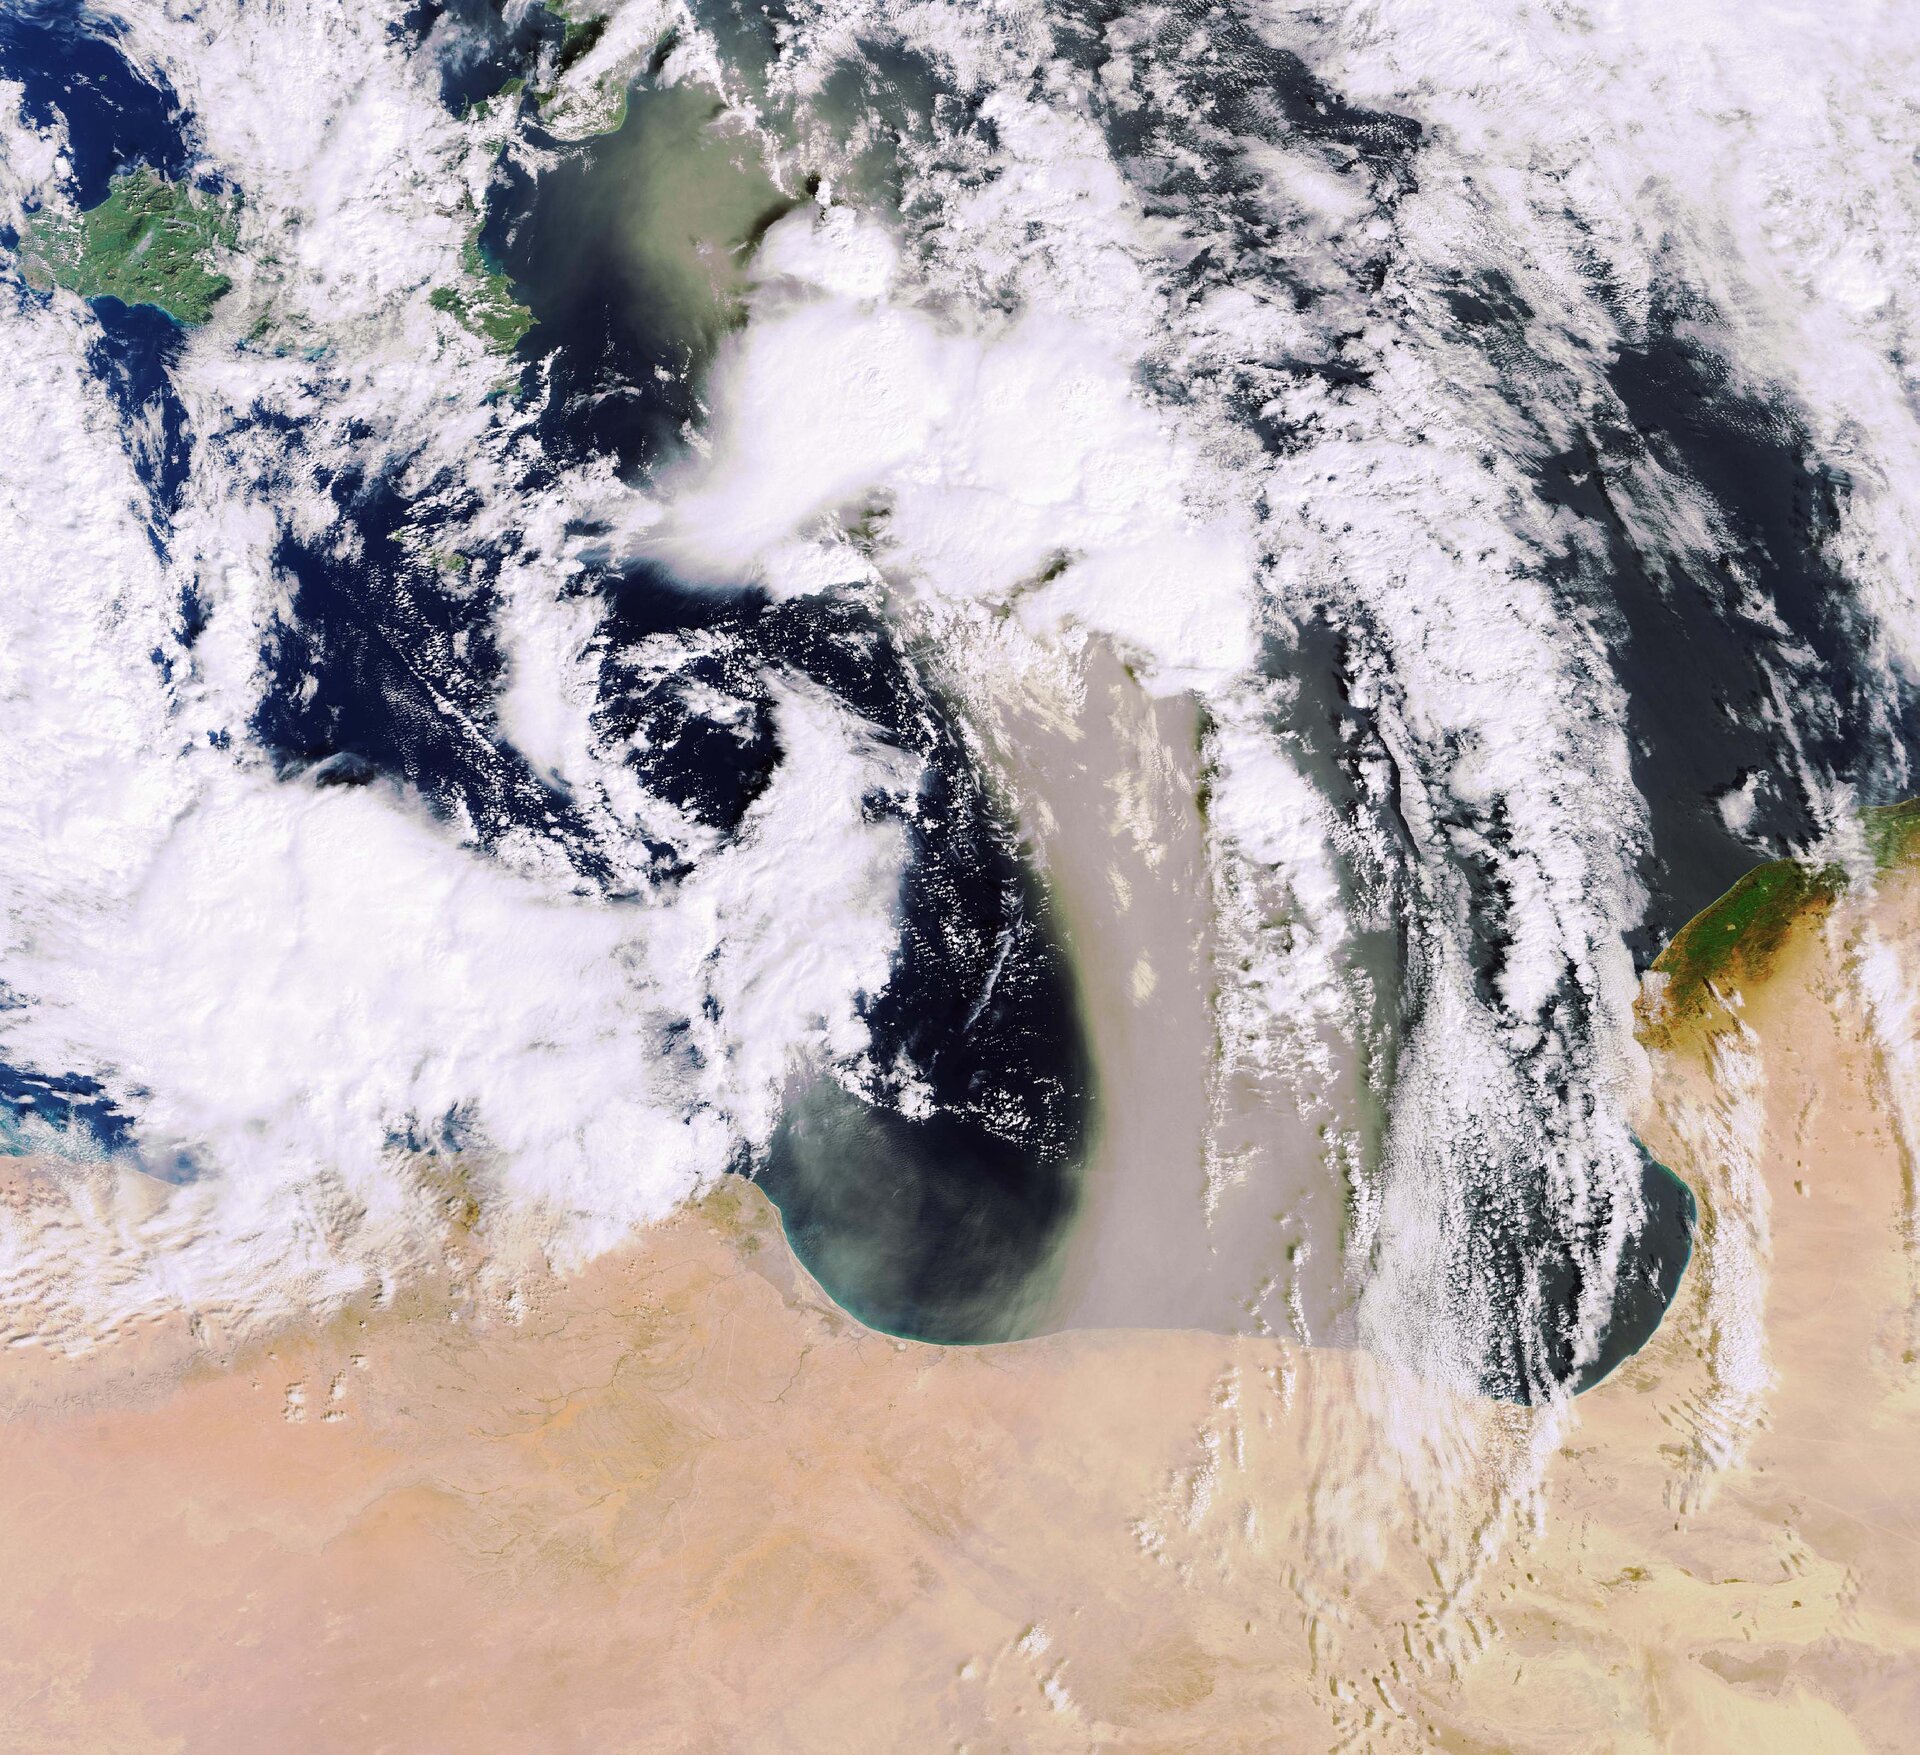 Envisat image of a sandstorm over the Mediterranean